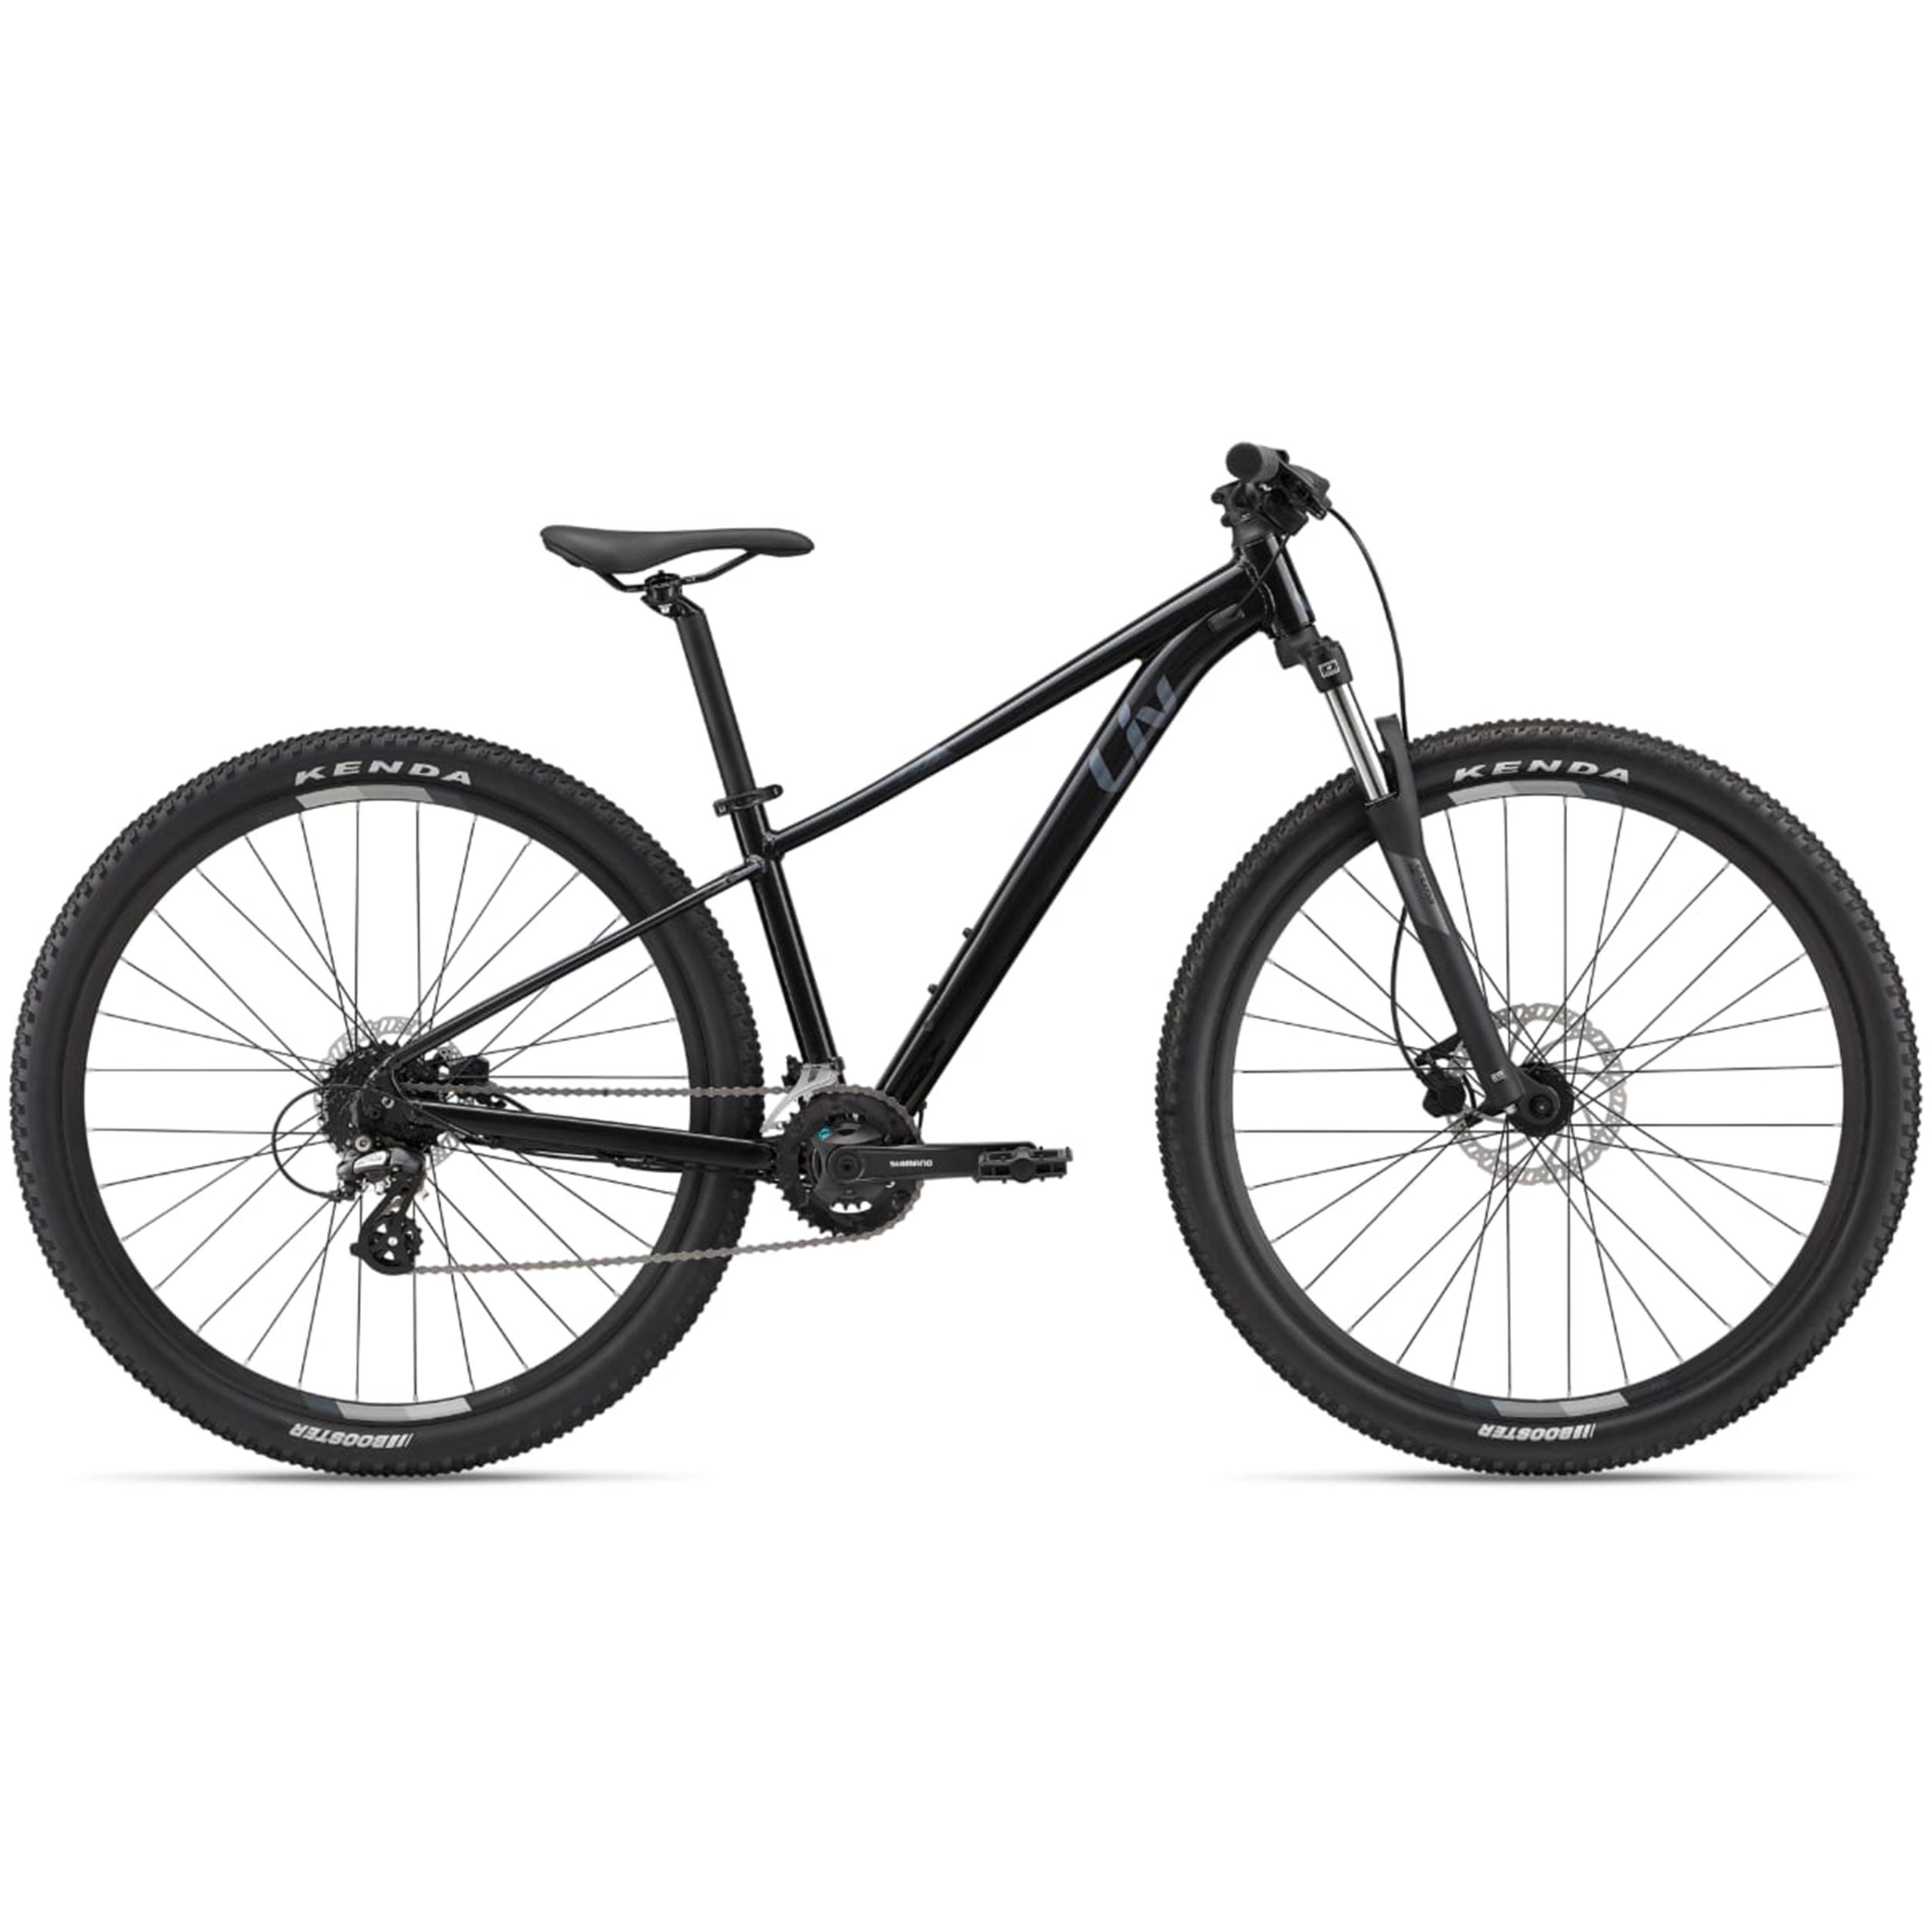 نکته خرید - قیمت روز دوچرخه کوهستان لیو مدل TEMPT 3 Metallic Black سایز 27.5 خرید